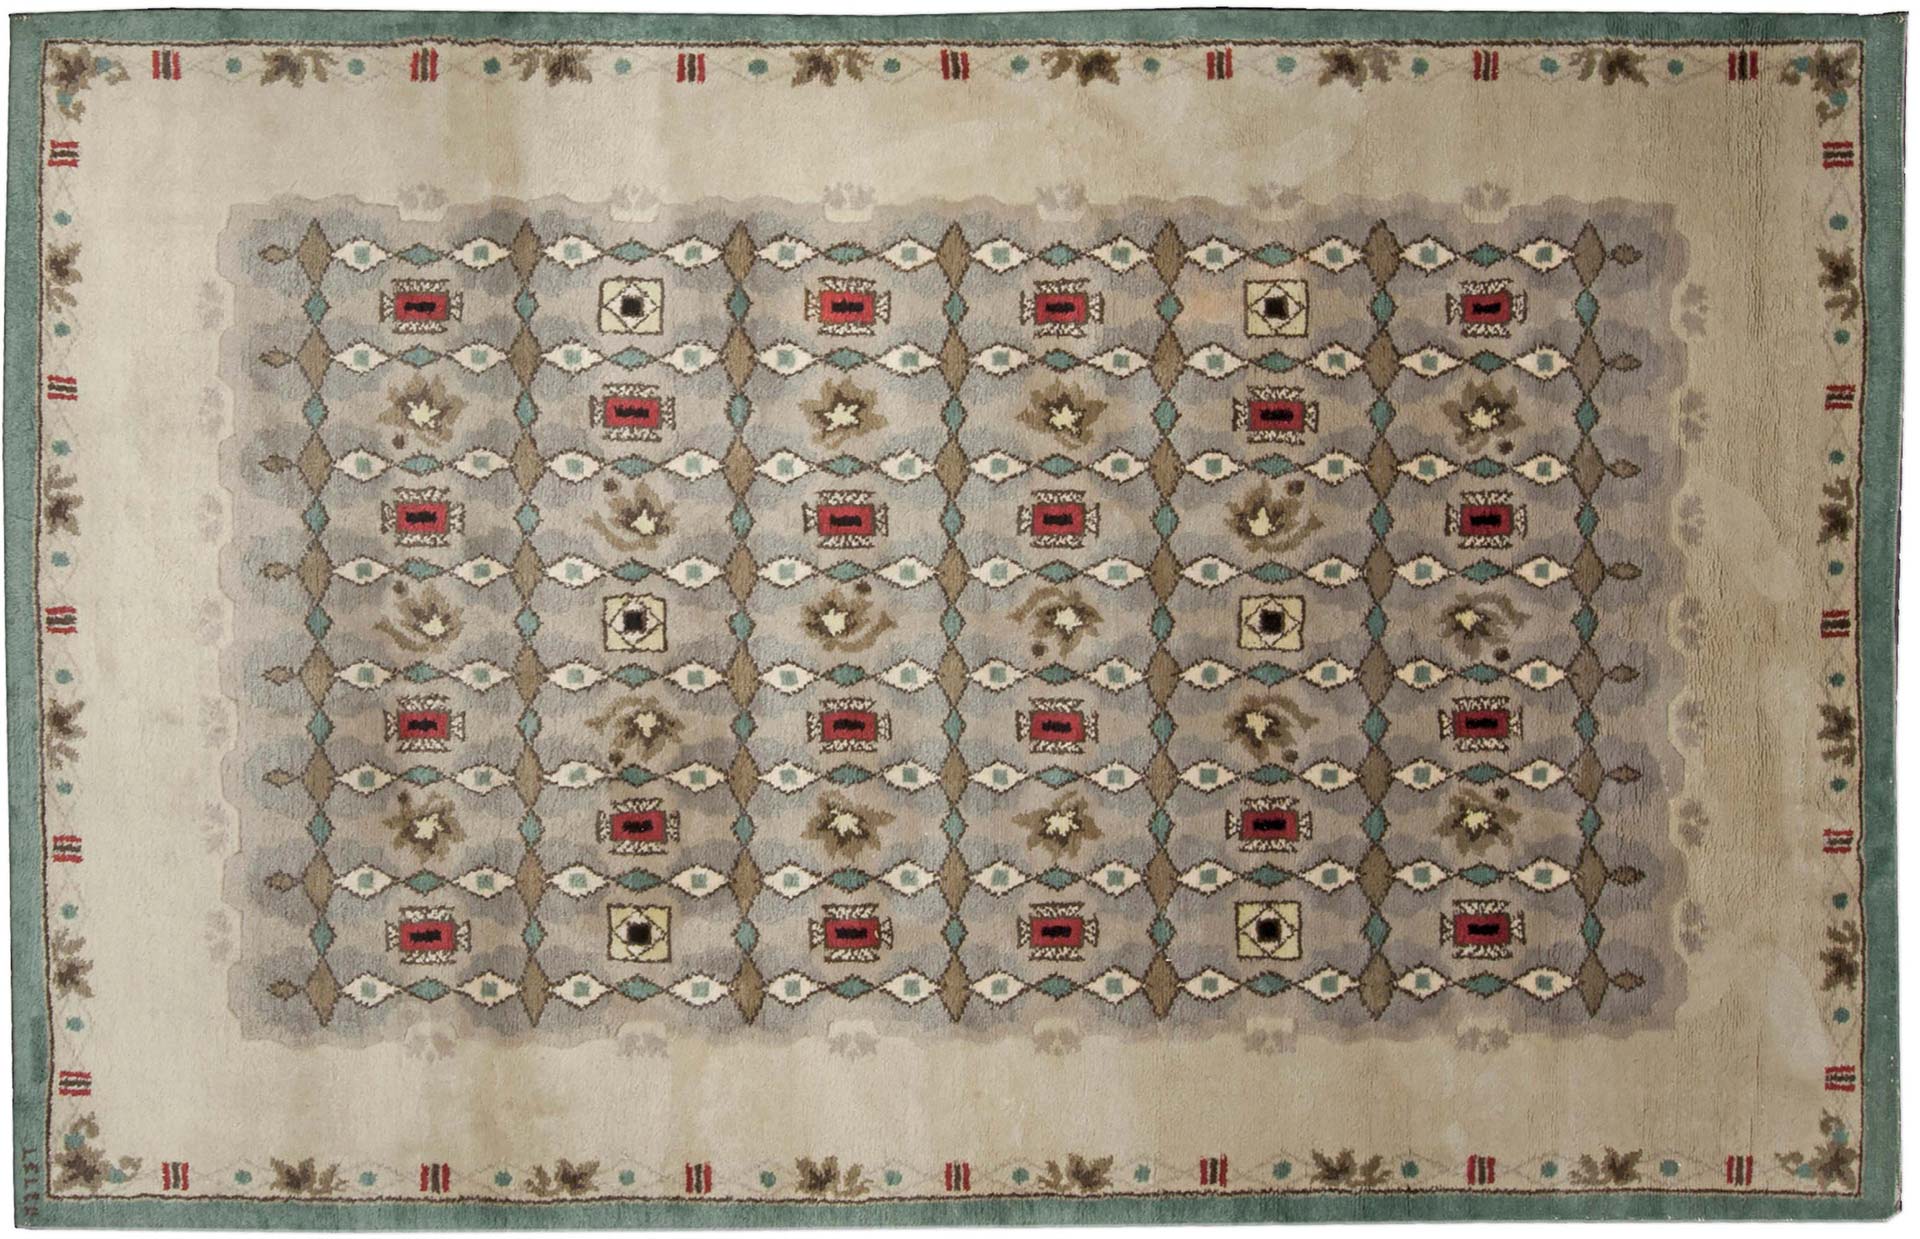 Ein Vintage-Teppich in einladenden, warmen Farben von Paule Leleu, Doris Leslie Blau Collection.